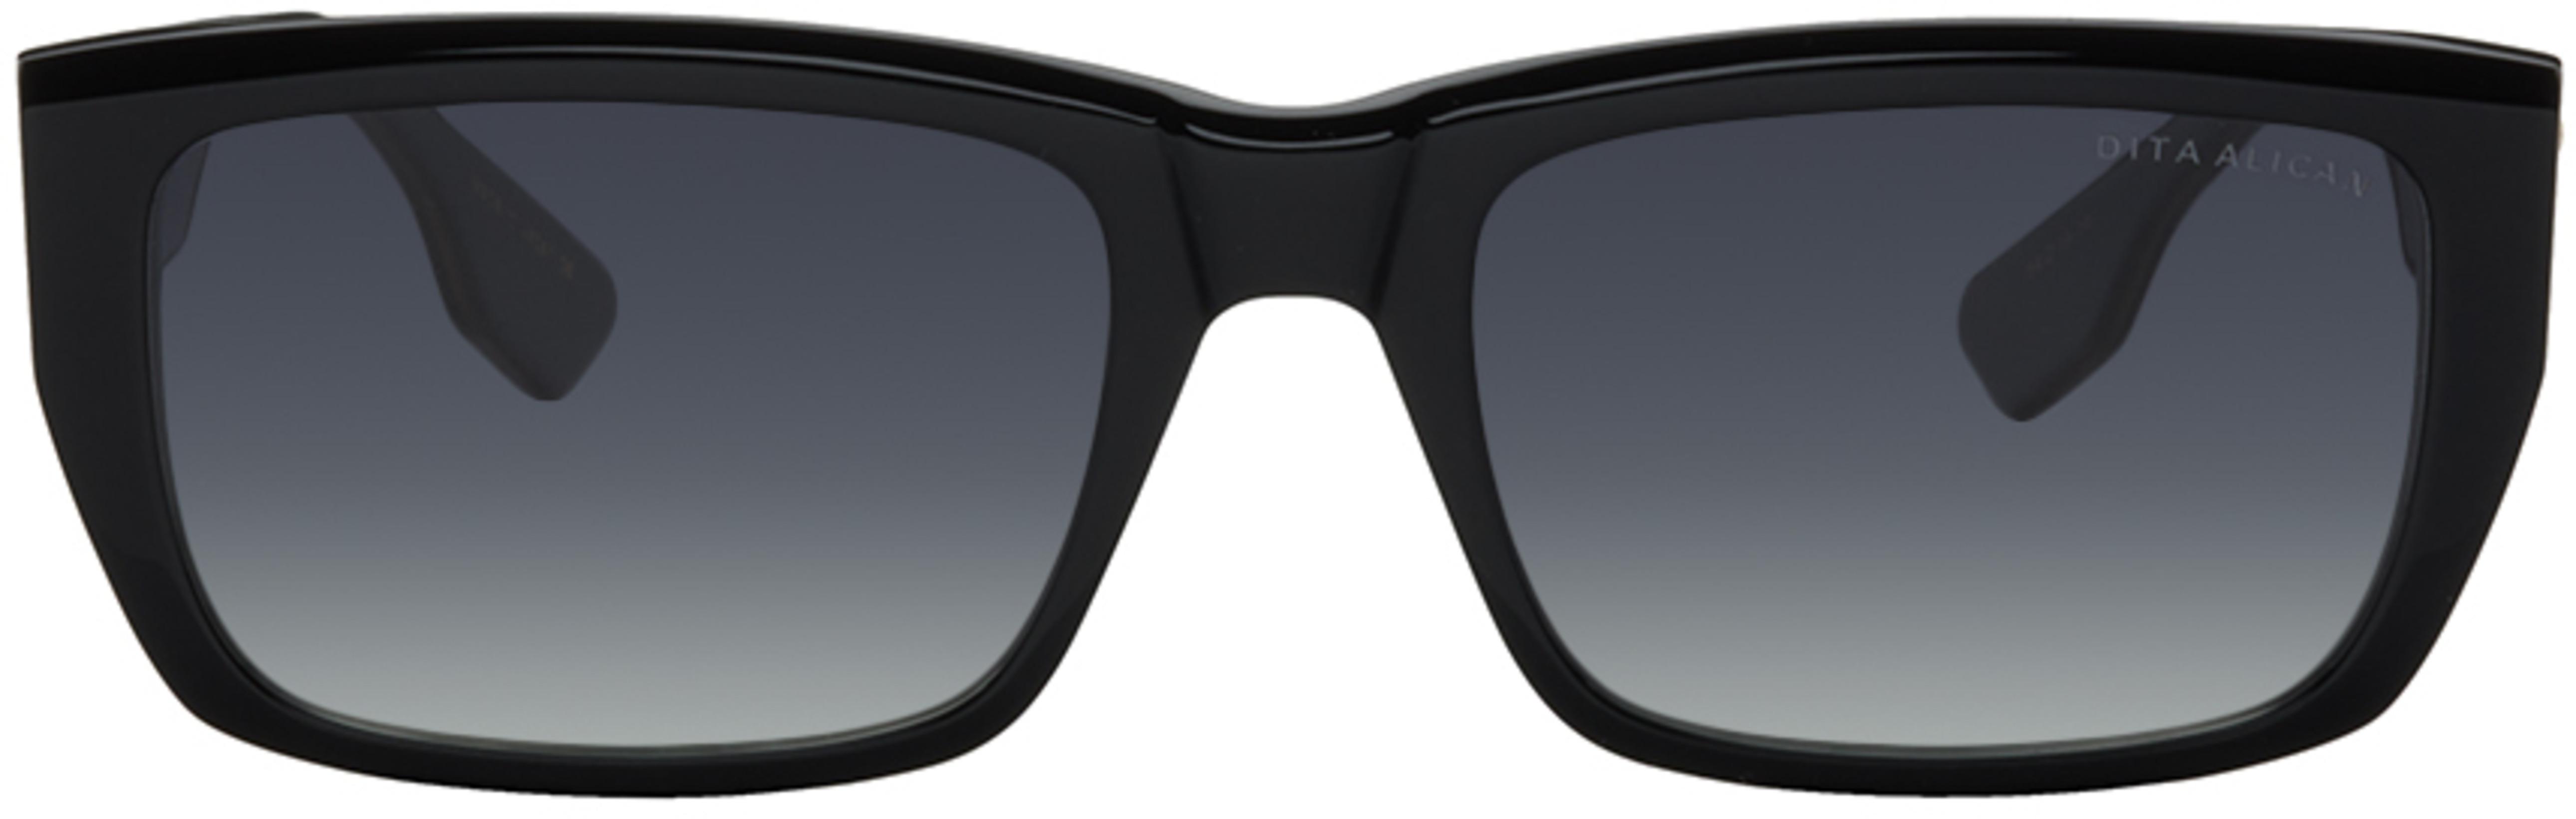 Black Alican Sunglasses by DITA